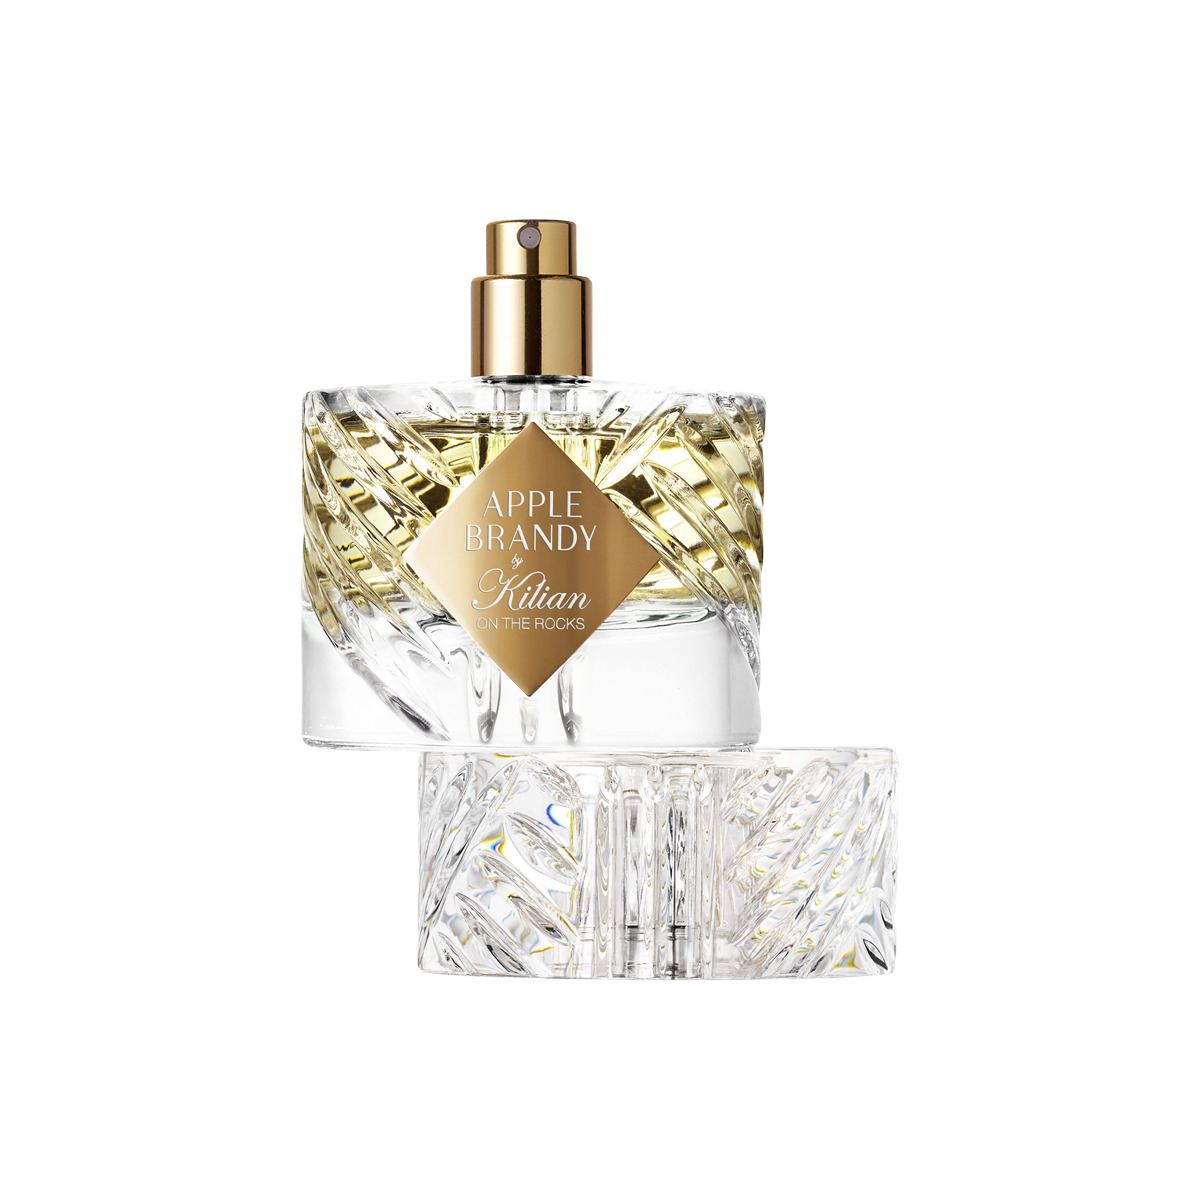 Kilian Paris - Apple Brandy Eau de Parfum